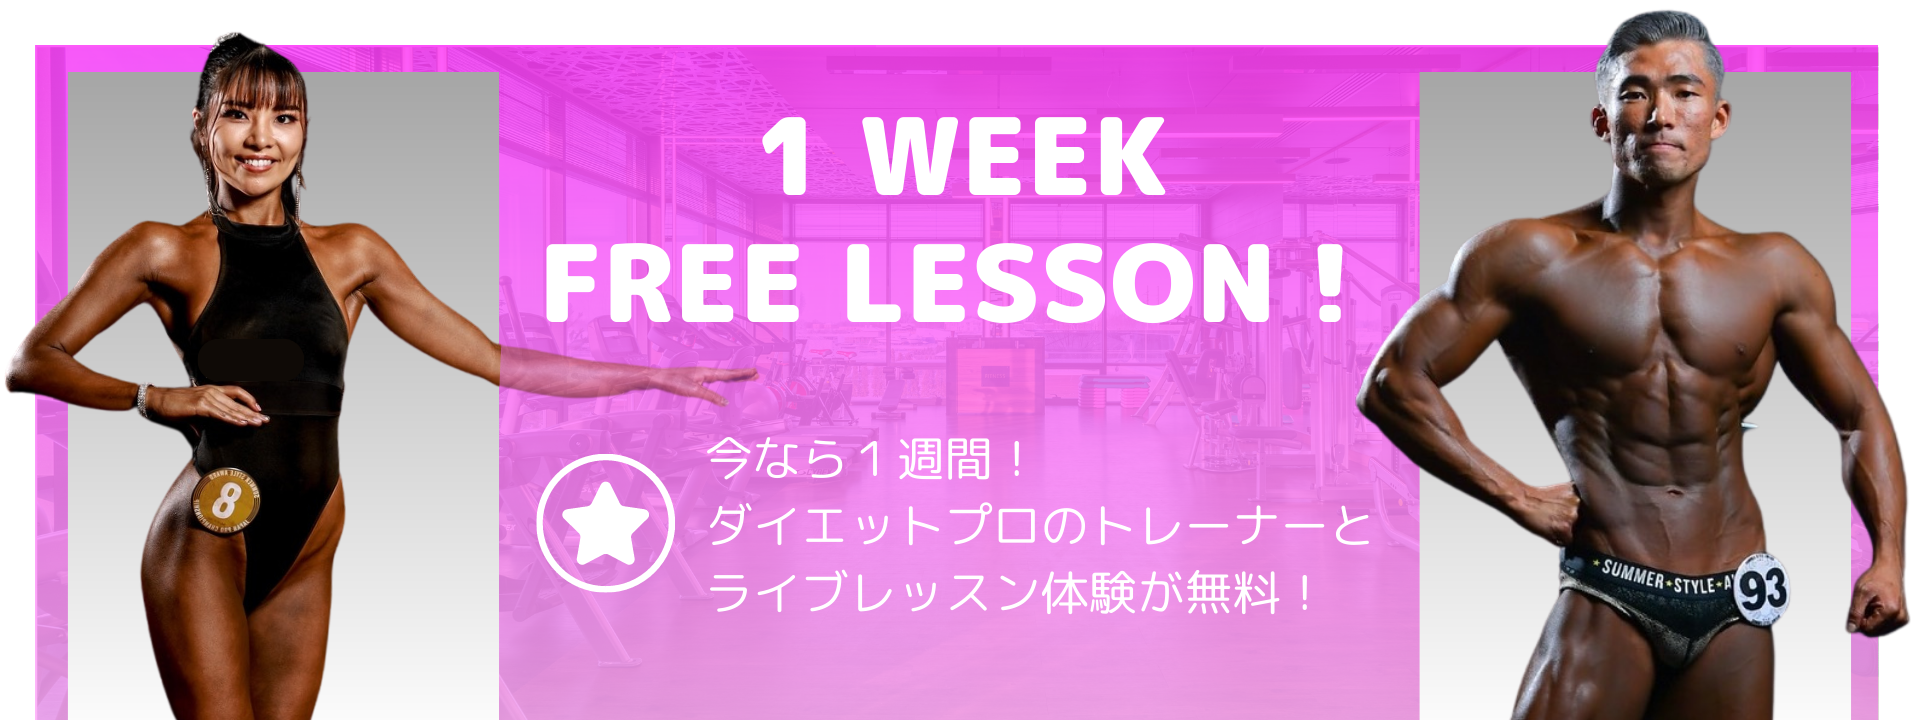 1 Week Free Lesson! 今なら1週間！ダイエットプロのトレーナーとライブレッスン体験が無料！